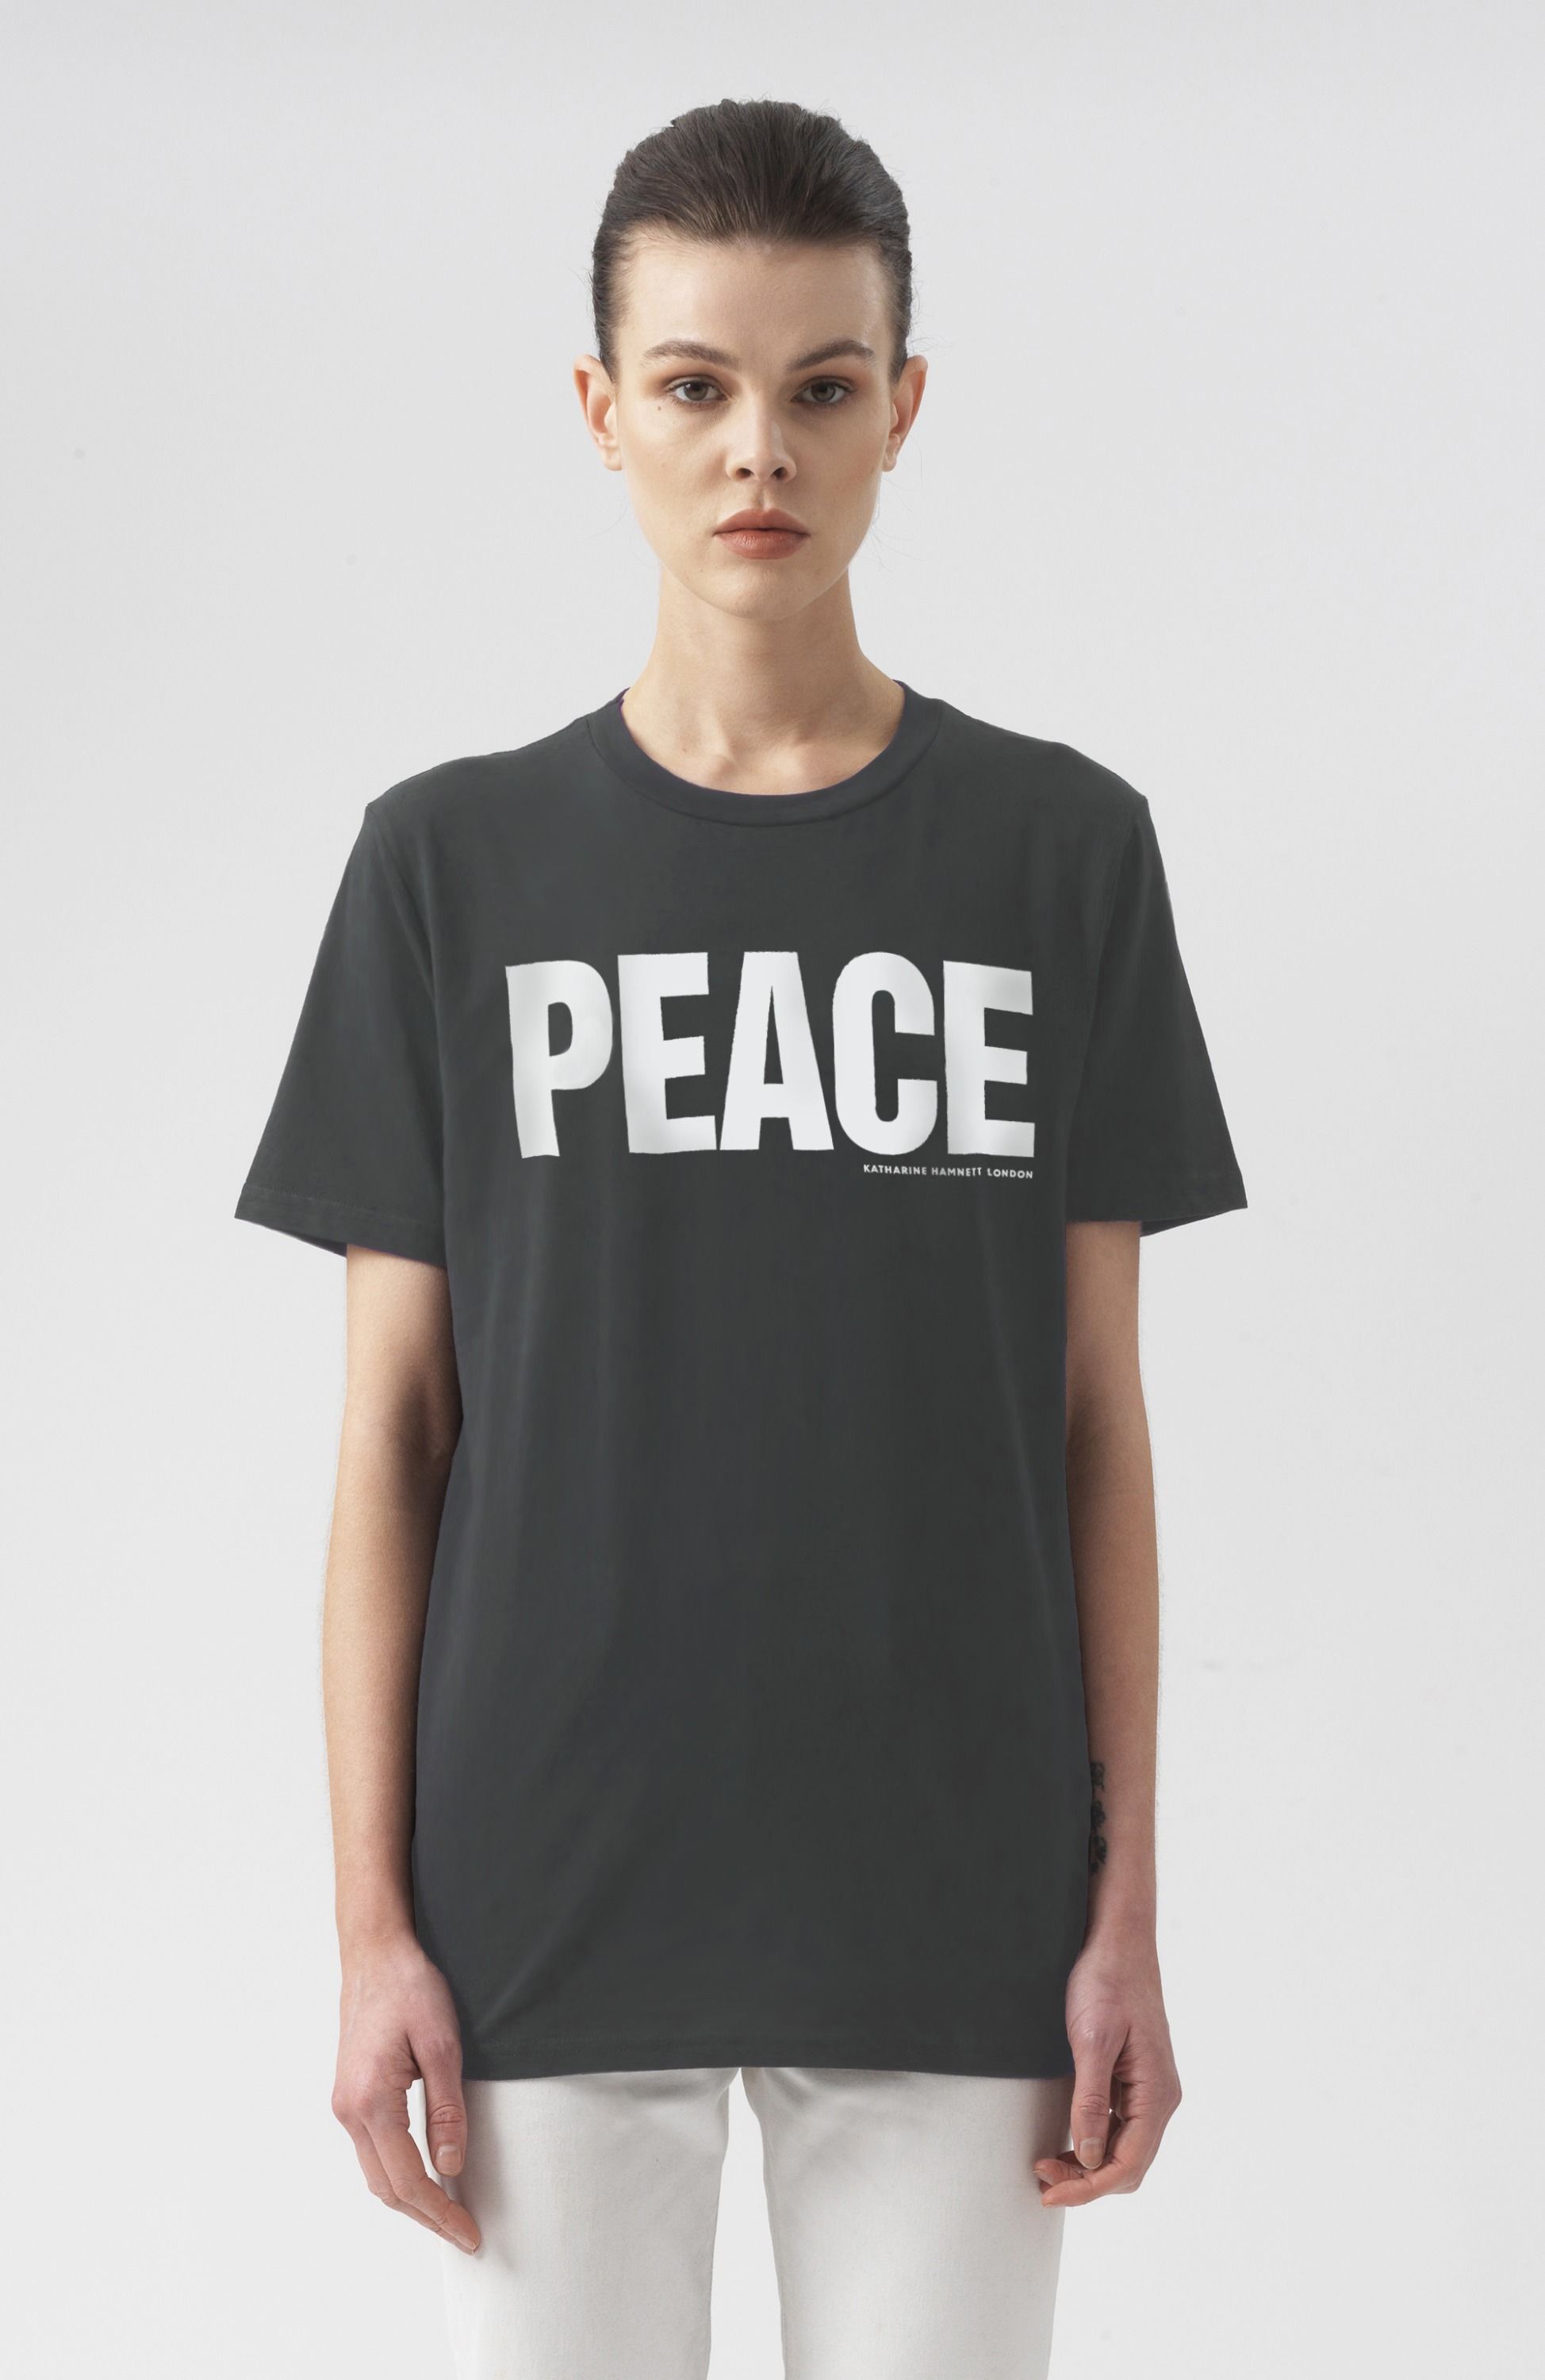 Peace short Sleeves T-Shirt by Katharine Hamnett London